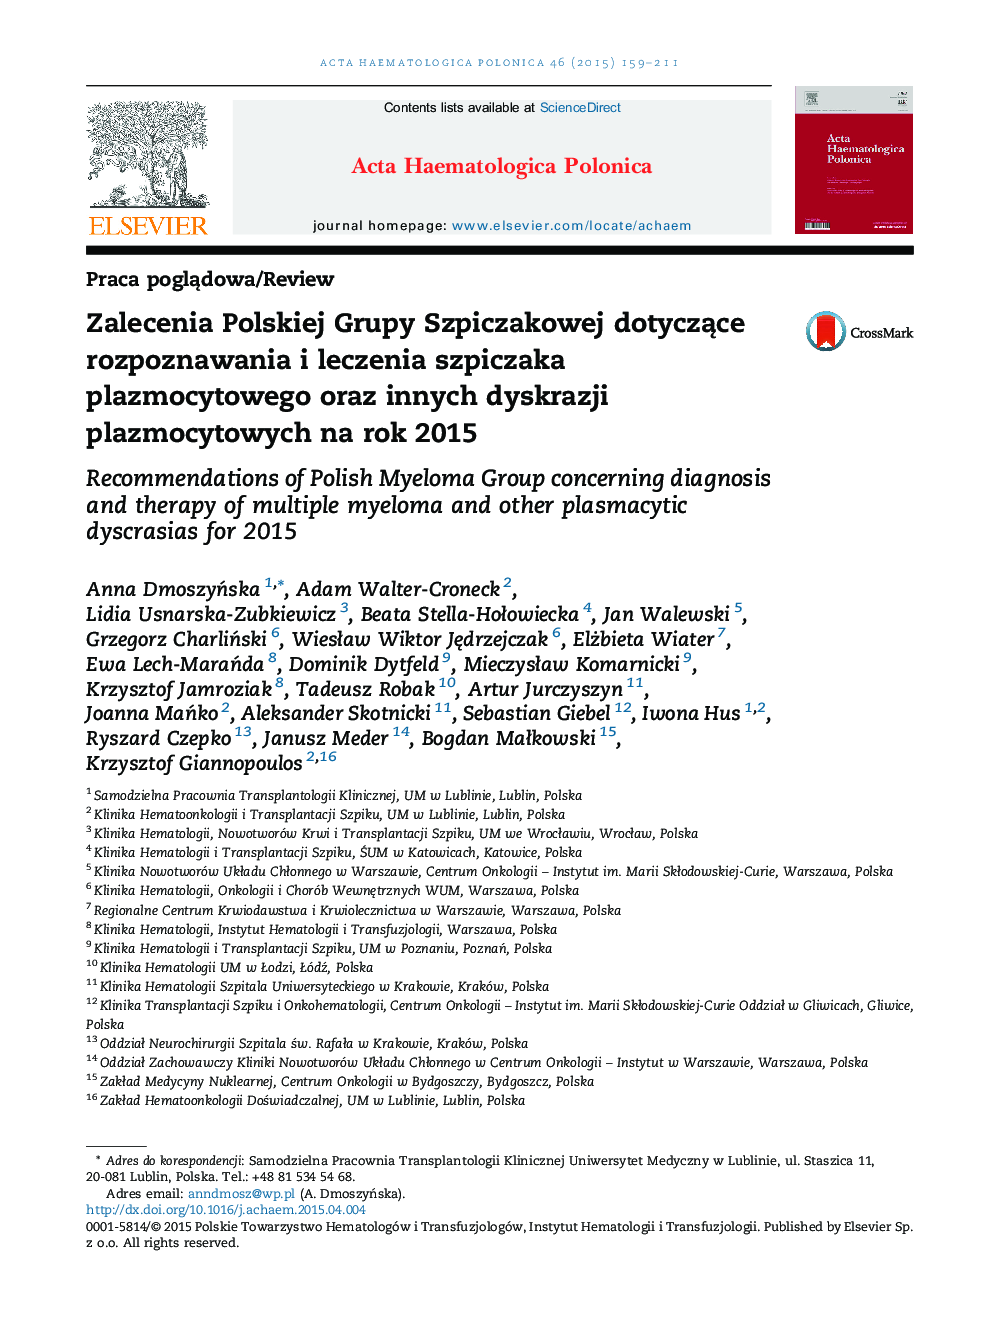 توصیه های گروهی از مولکول های لهستانی در مورد تشخیص و درمان میلوم پلاسماسئوتوم و دیگر دیسکراسی های پلاسموسیتی 2015 